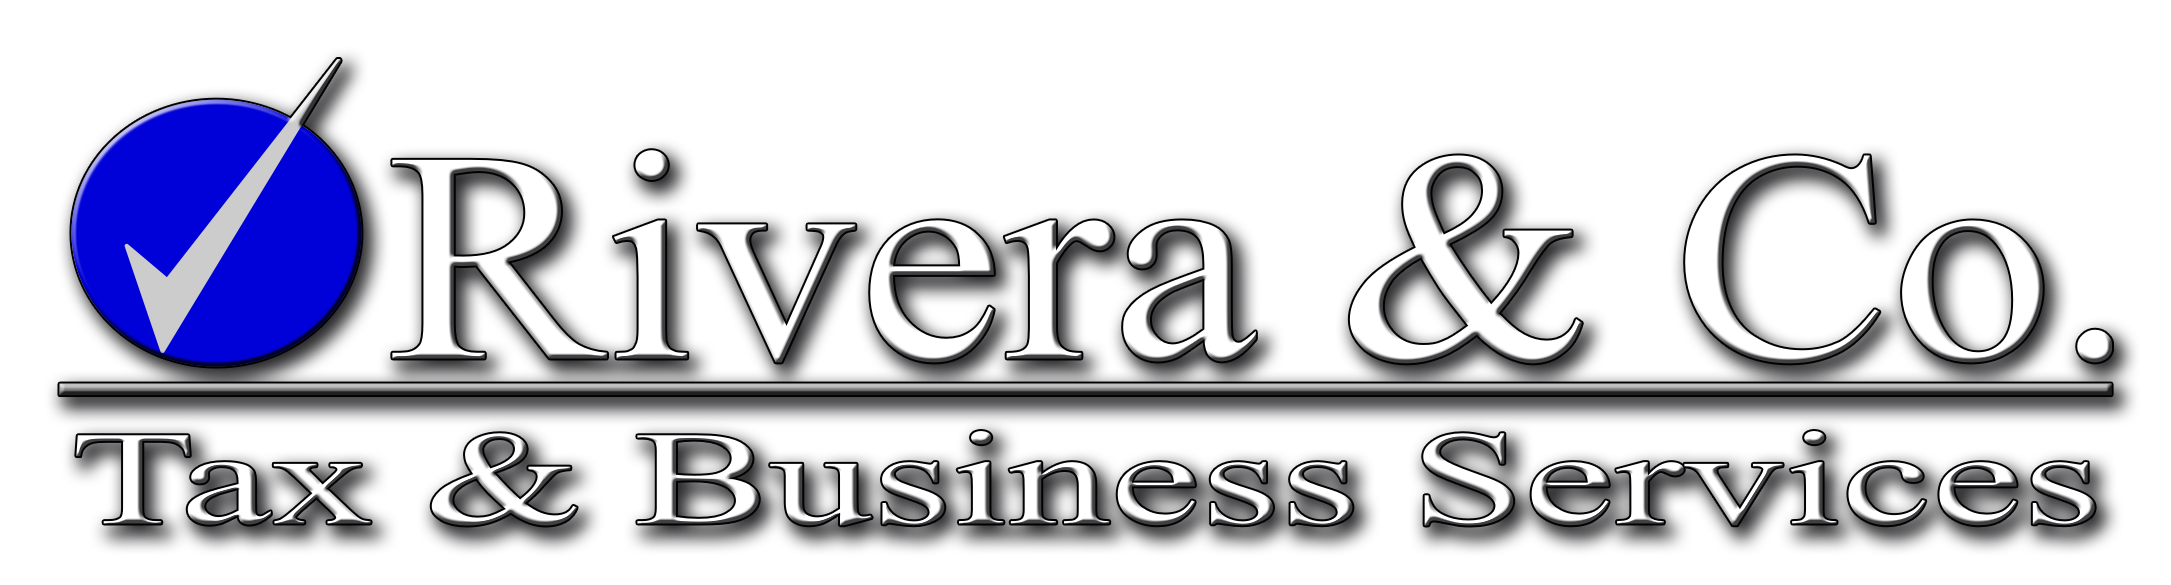 Rivera & Co.